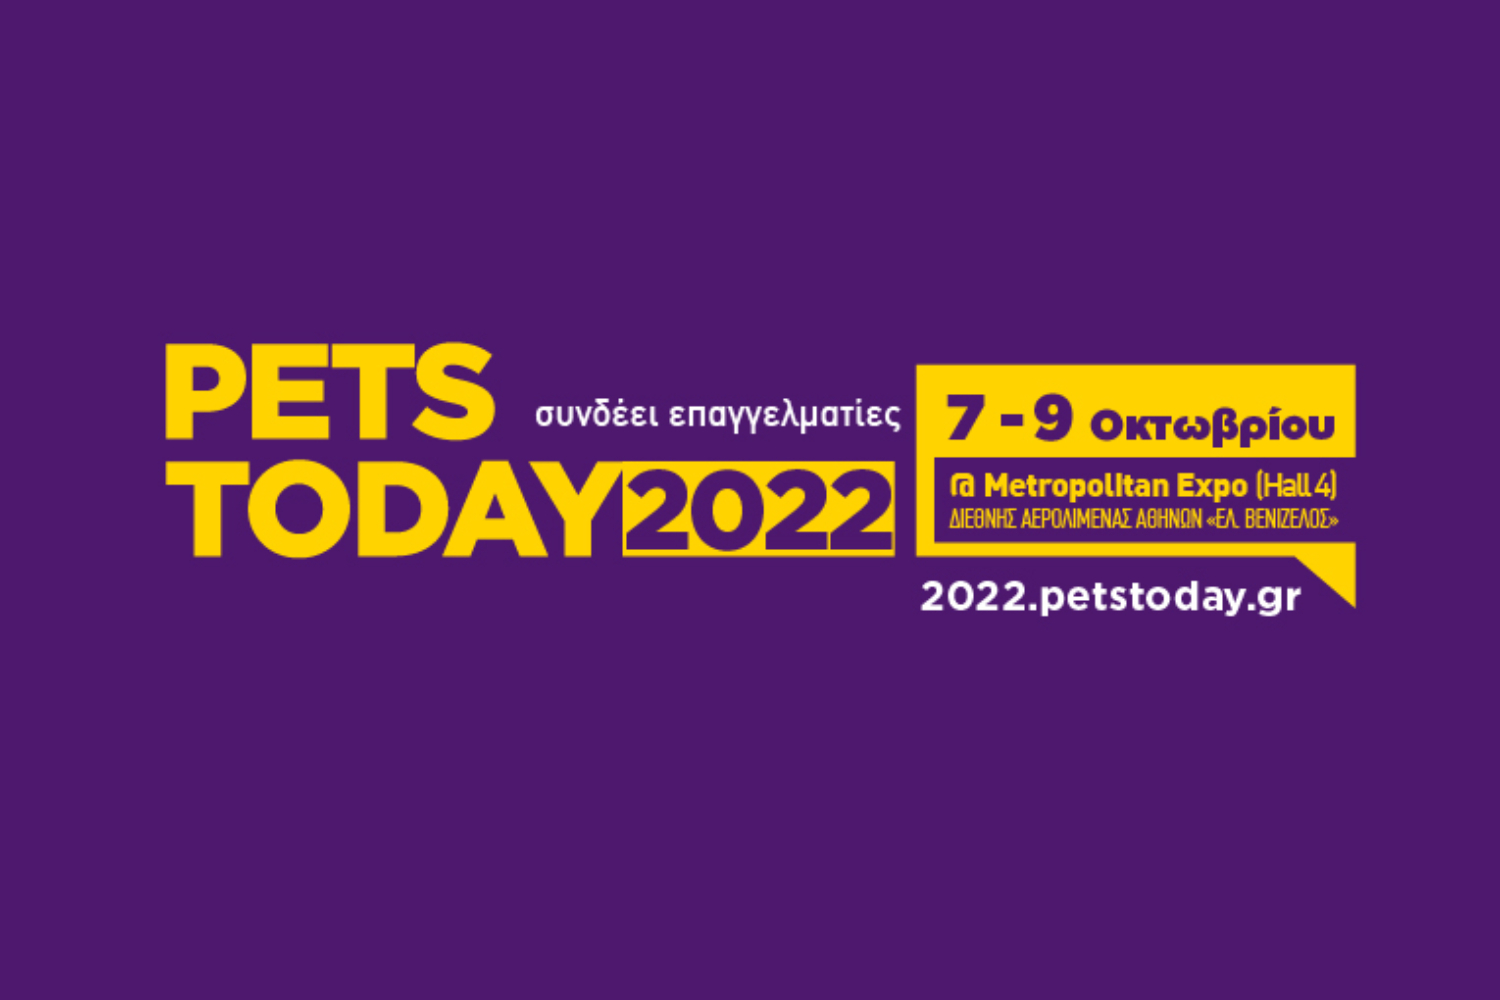 Η Pets Today 2022 μπαίνει σε δράση!